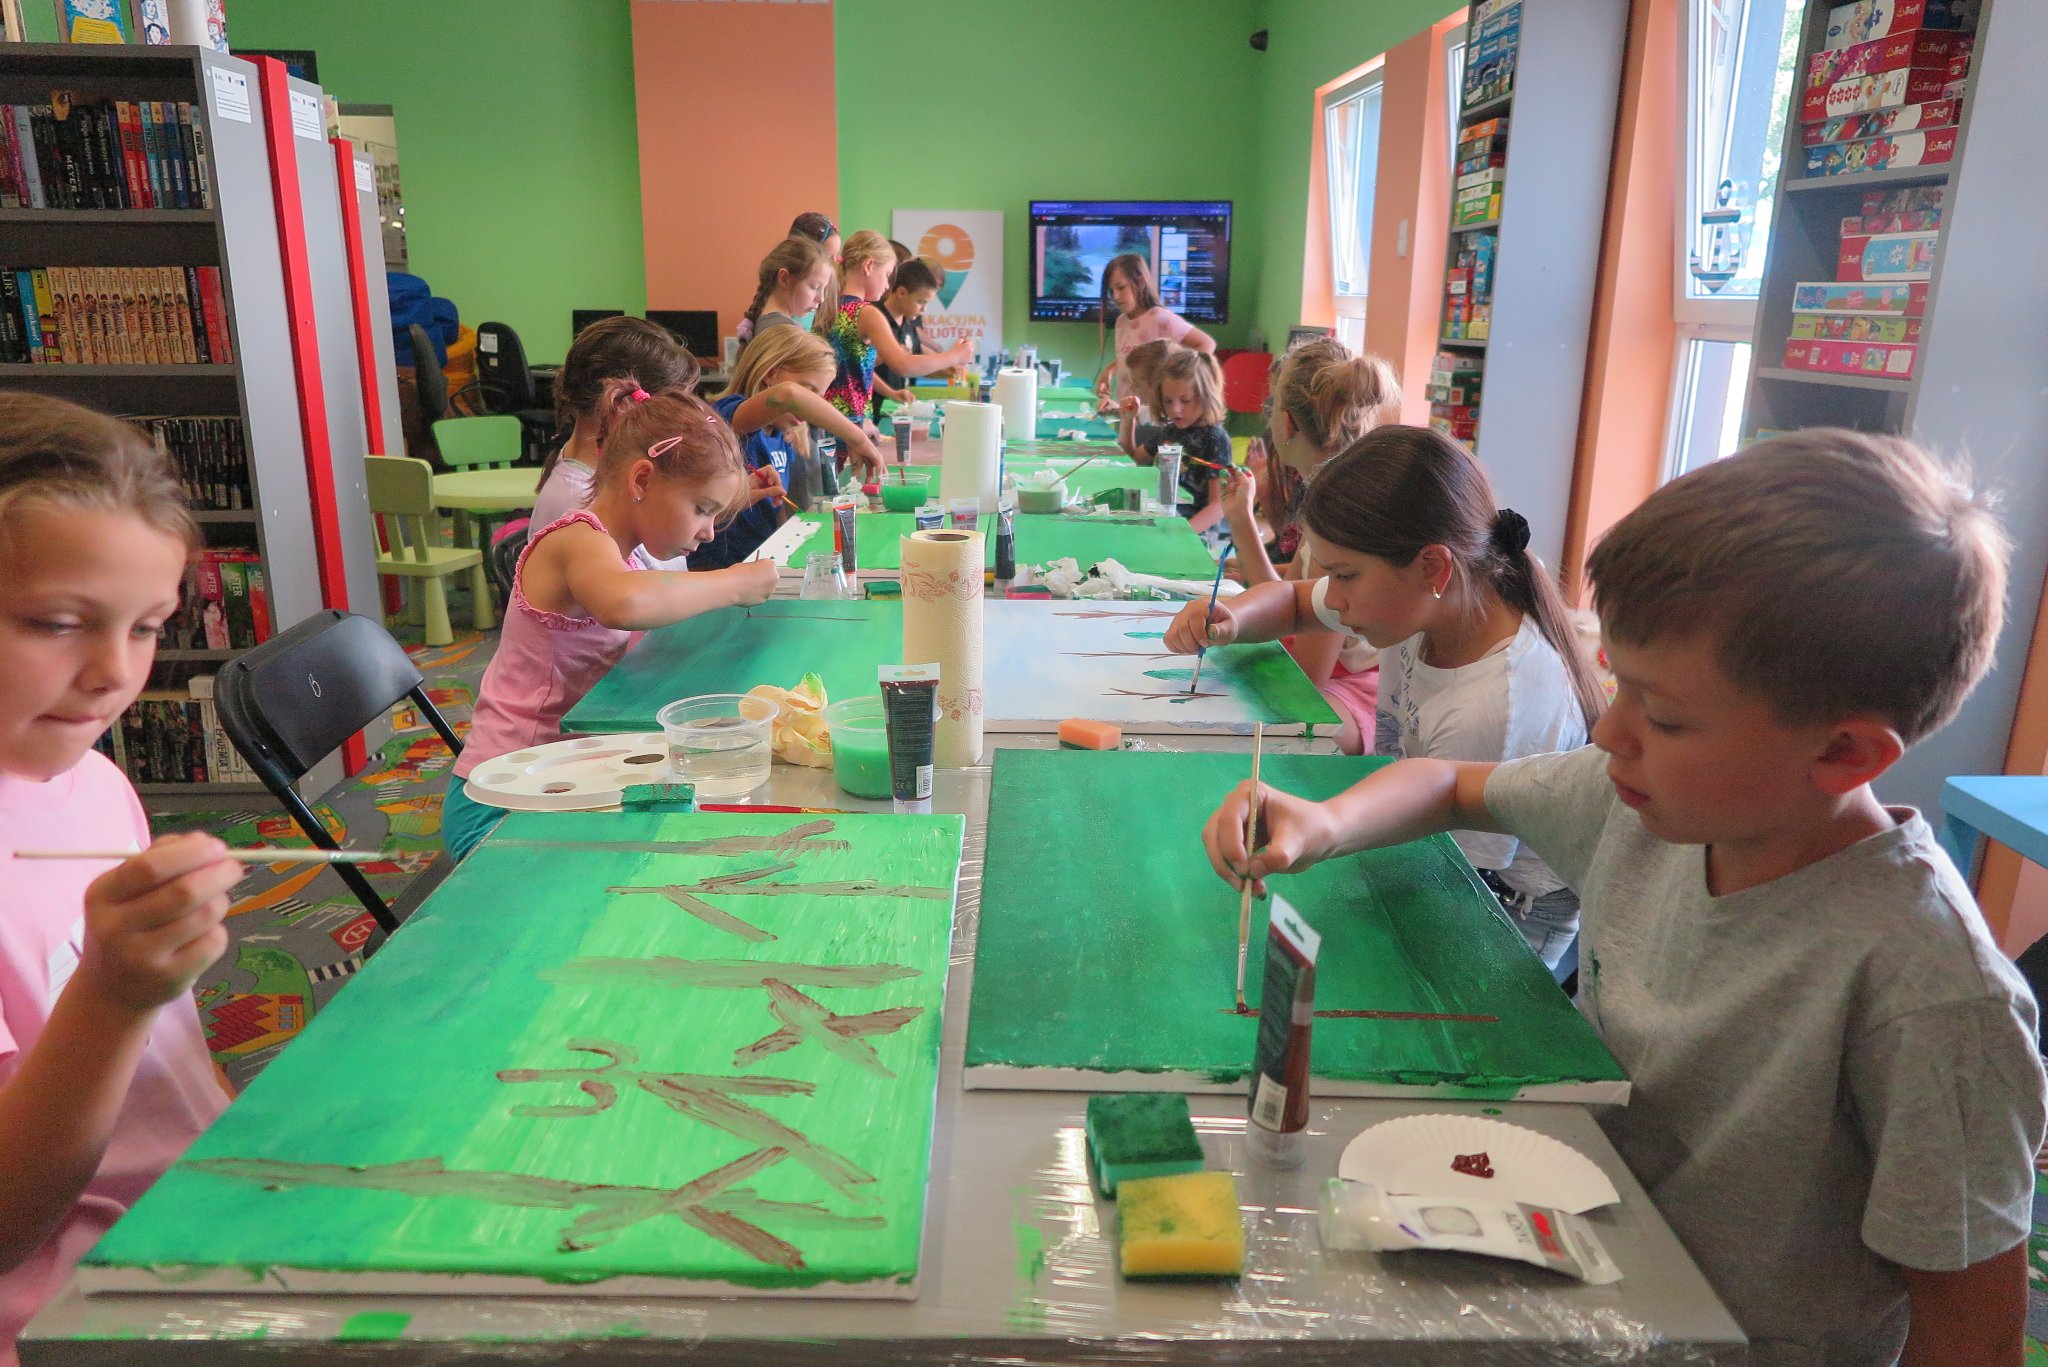 uczestnicy warsztatów malowania na płótnie siedzą na krzesłach przy stoliku i malują obrazy leżące na blacie stołu